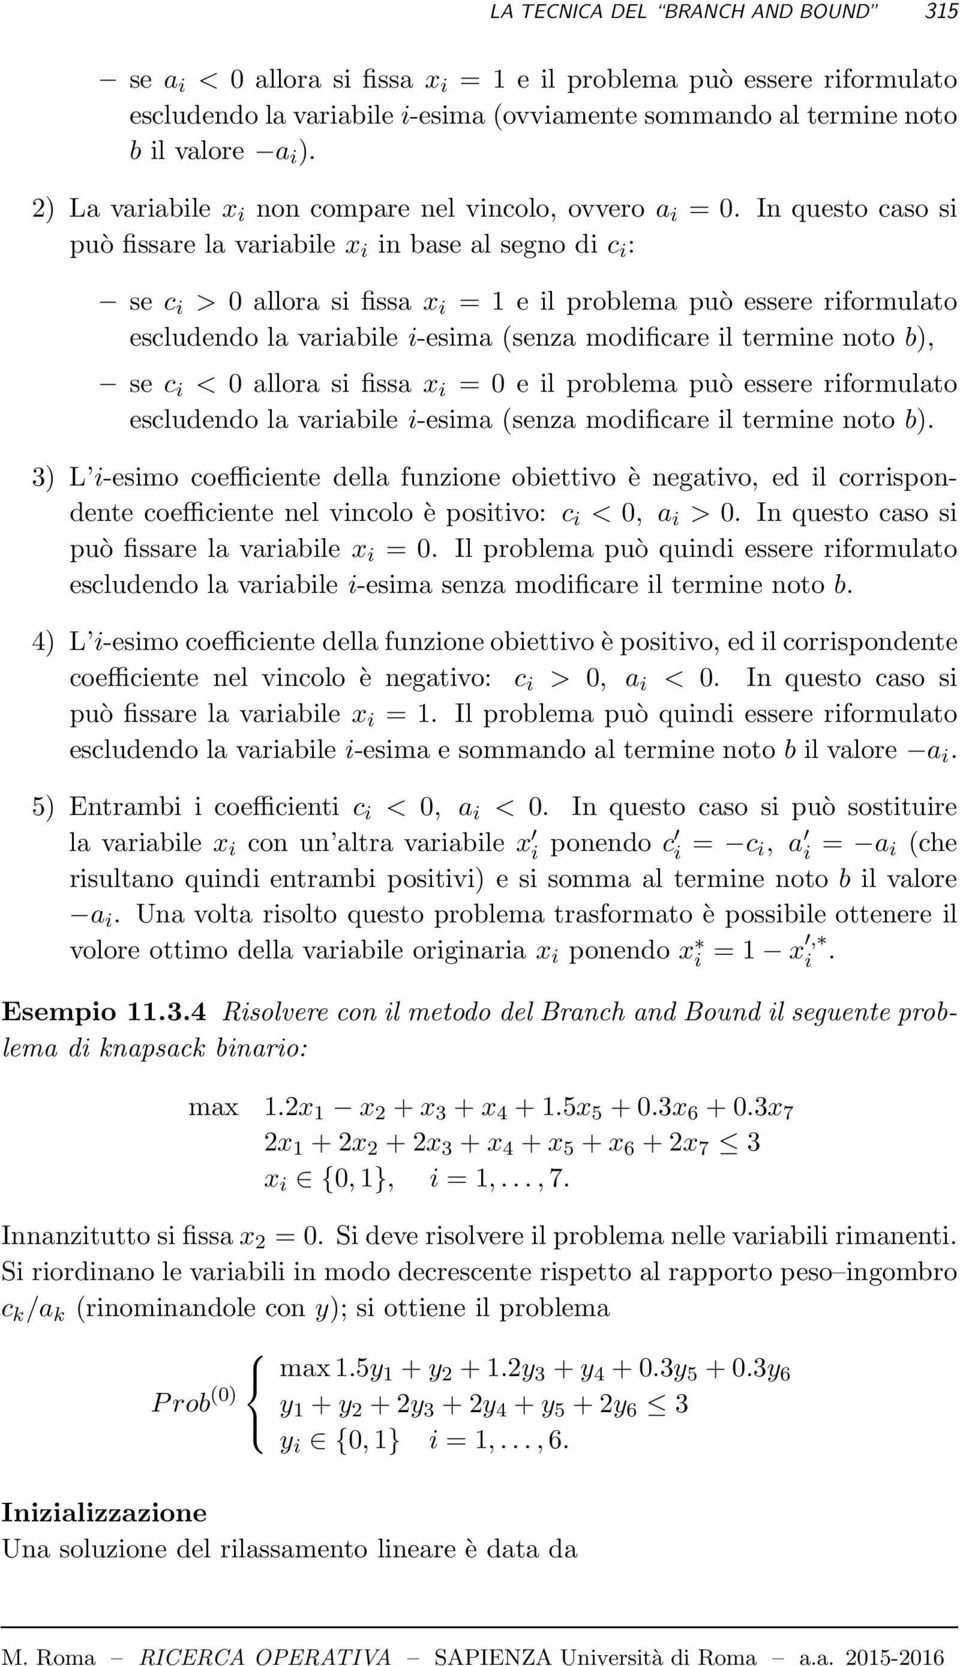 In questo caso si può fissare la variabile x i in base al segno di c i : se c i > 0 allora si fissa x i = 1 e il problema può essere riformulato escludendo la variabile i-esima (senza modificare il